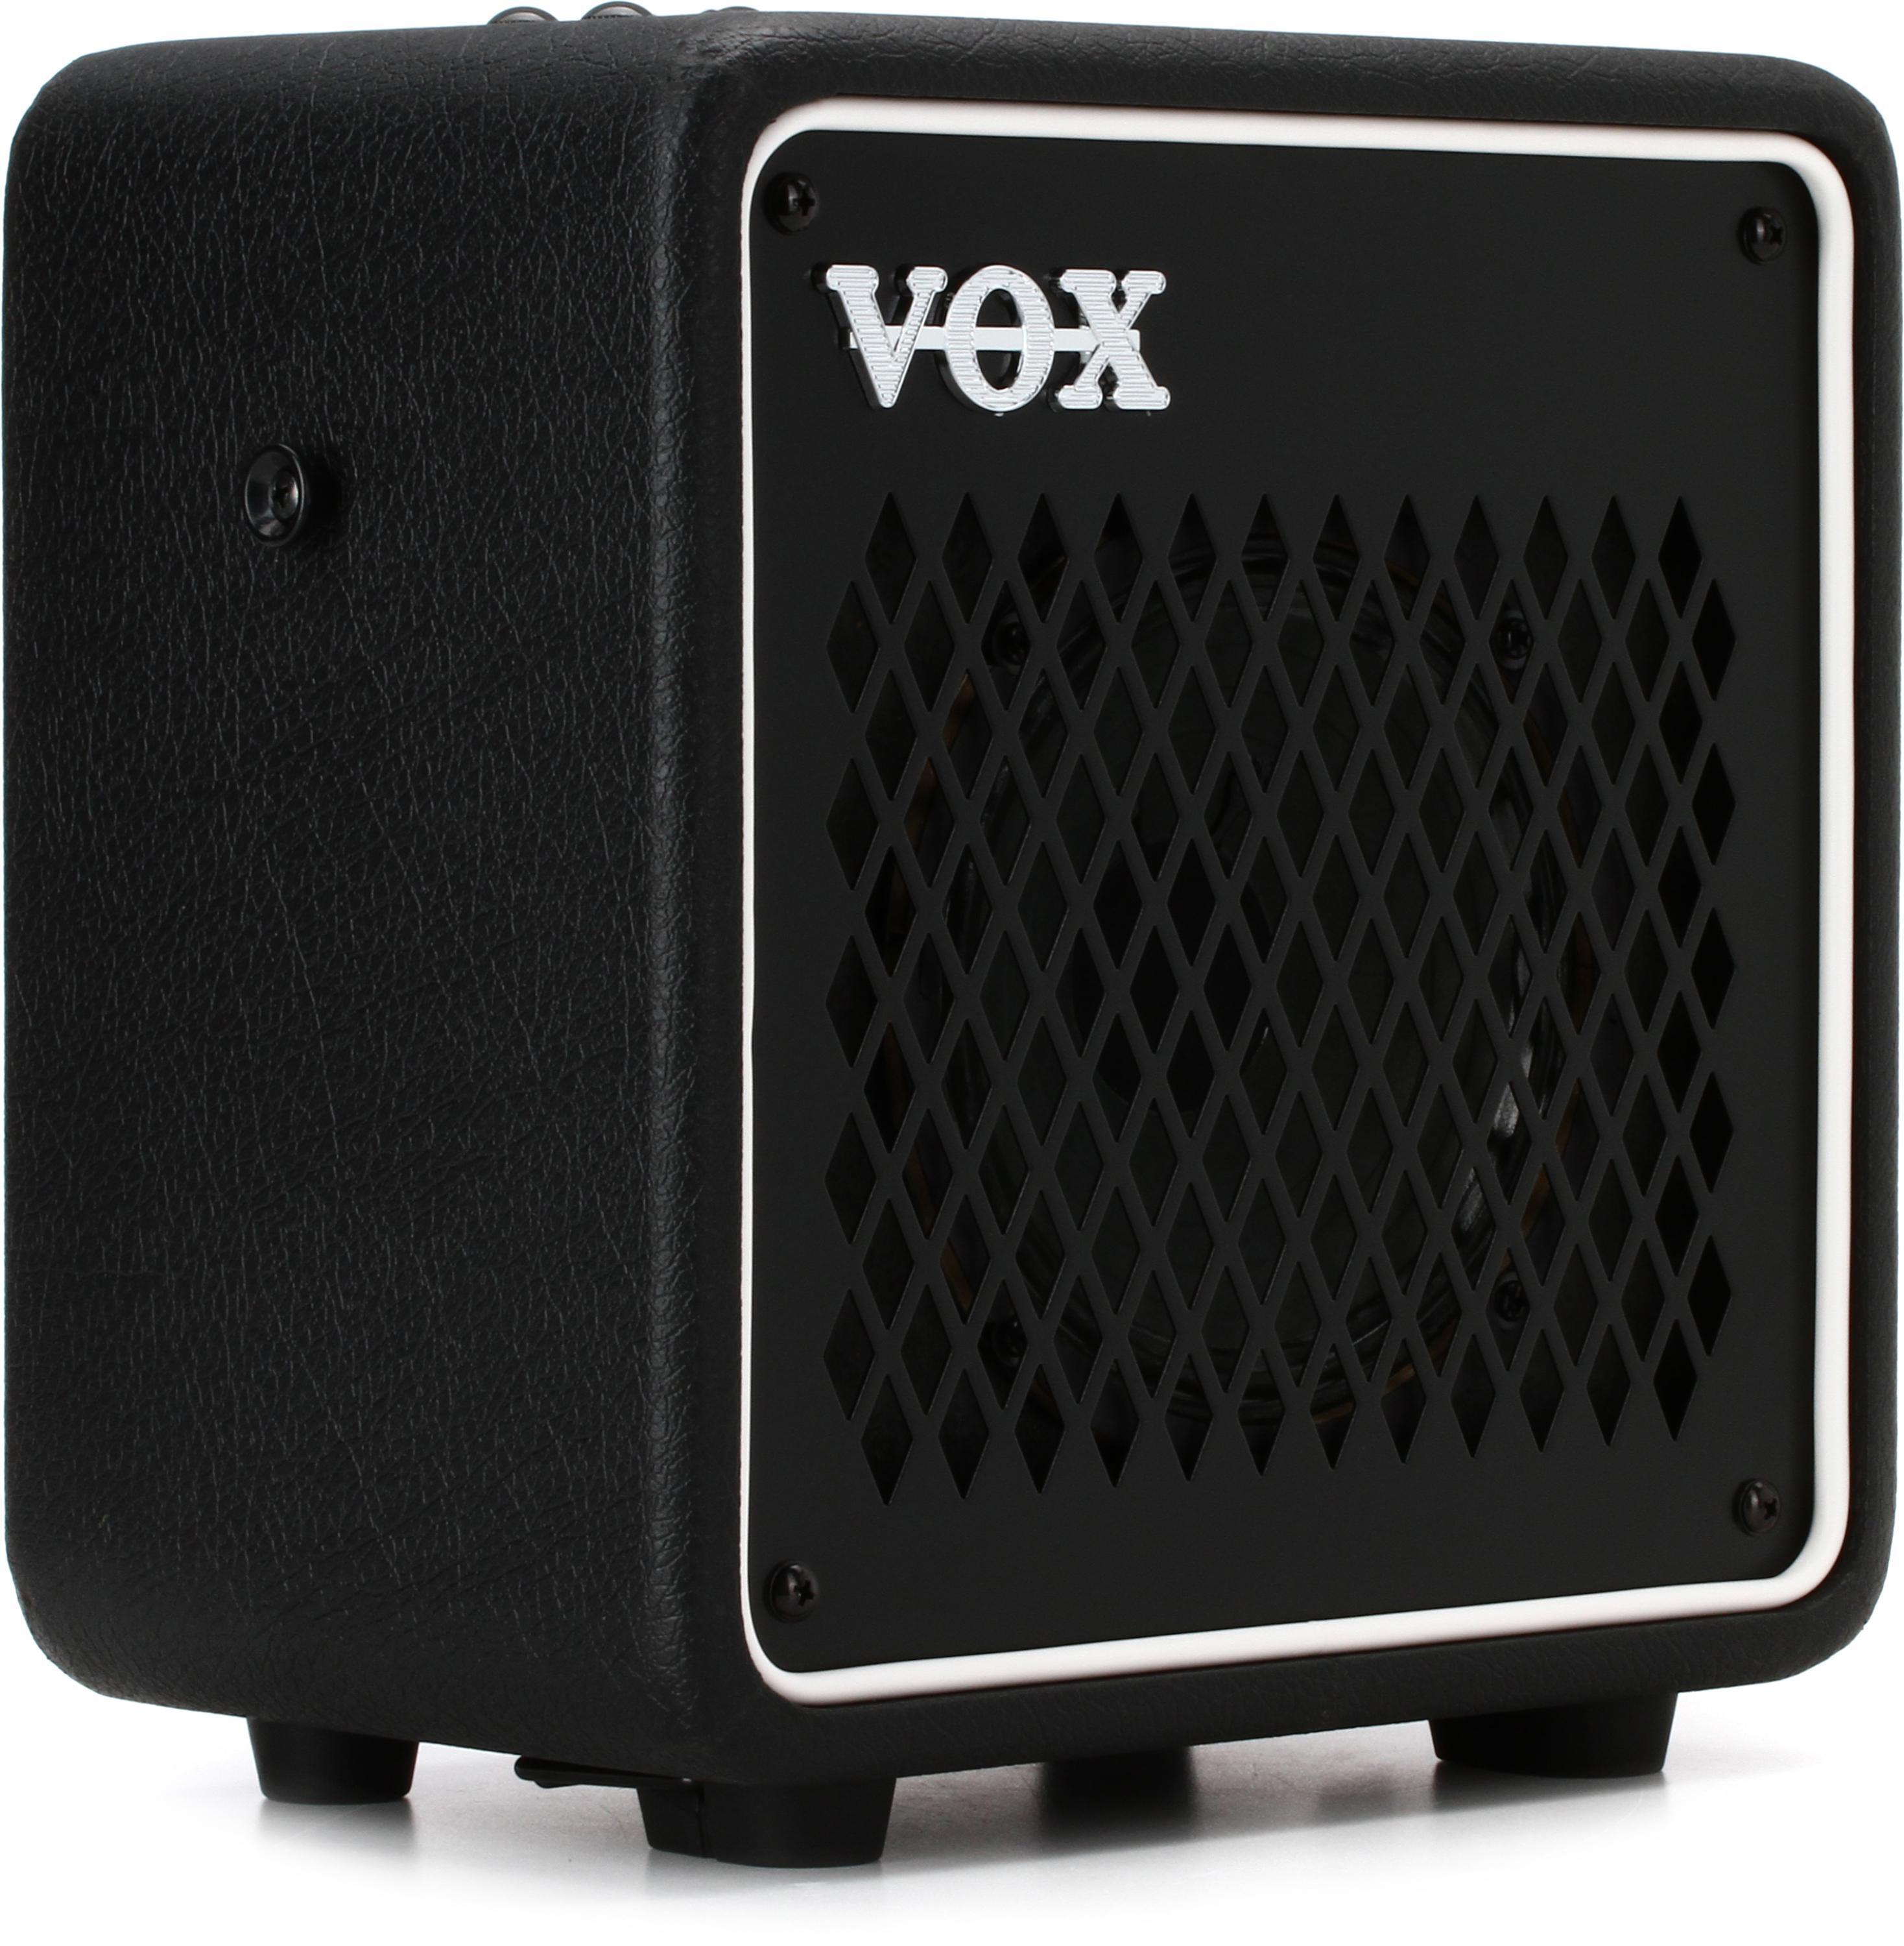 Bundled Item: Vox Mini Go 10 - 10-watt Portable Modeling Amp - Black